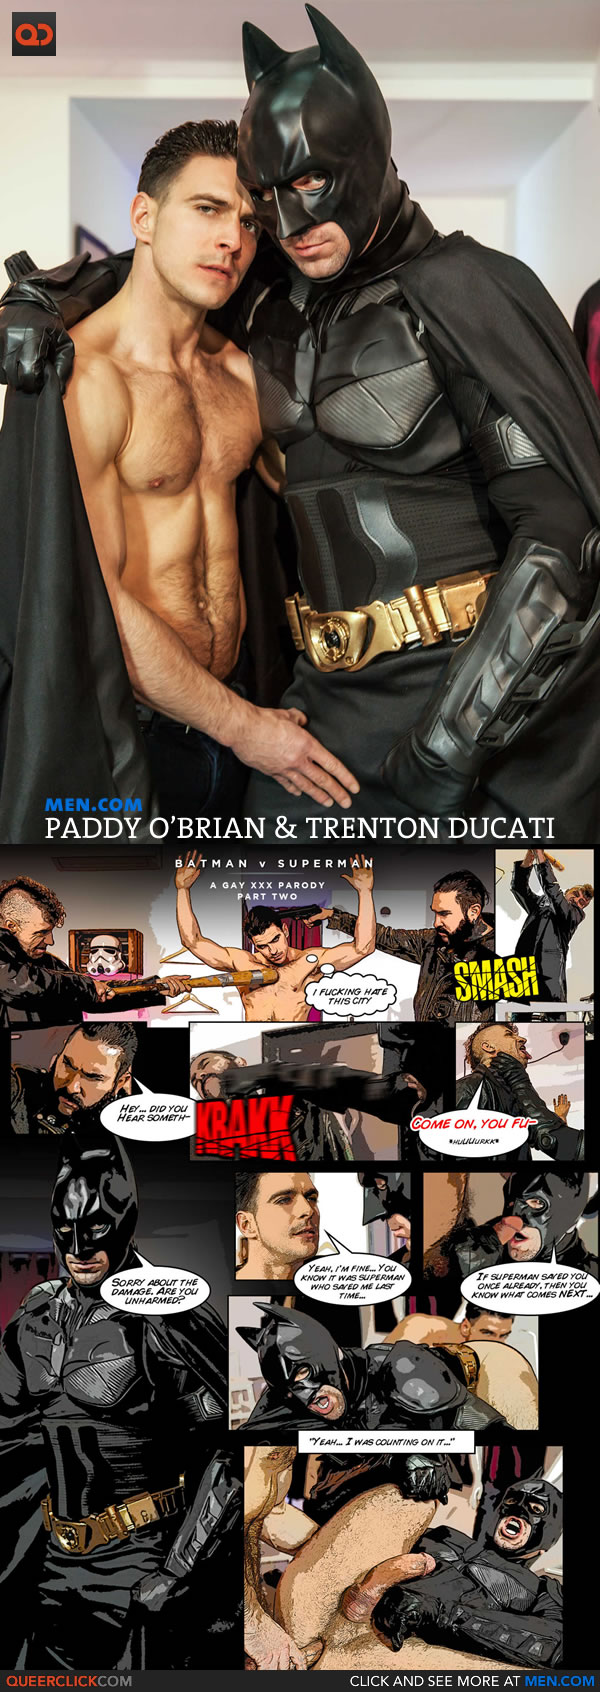 men-com-batman-v-superman-parody-part-2-1